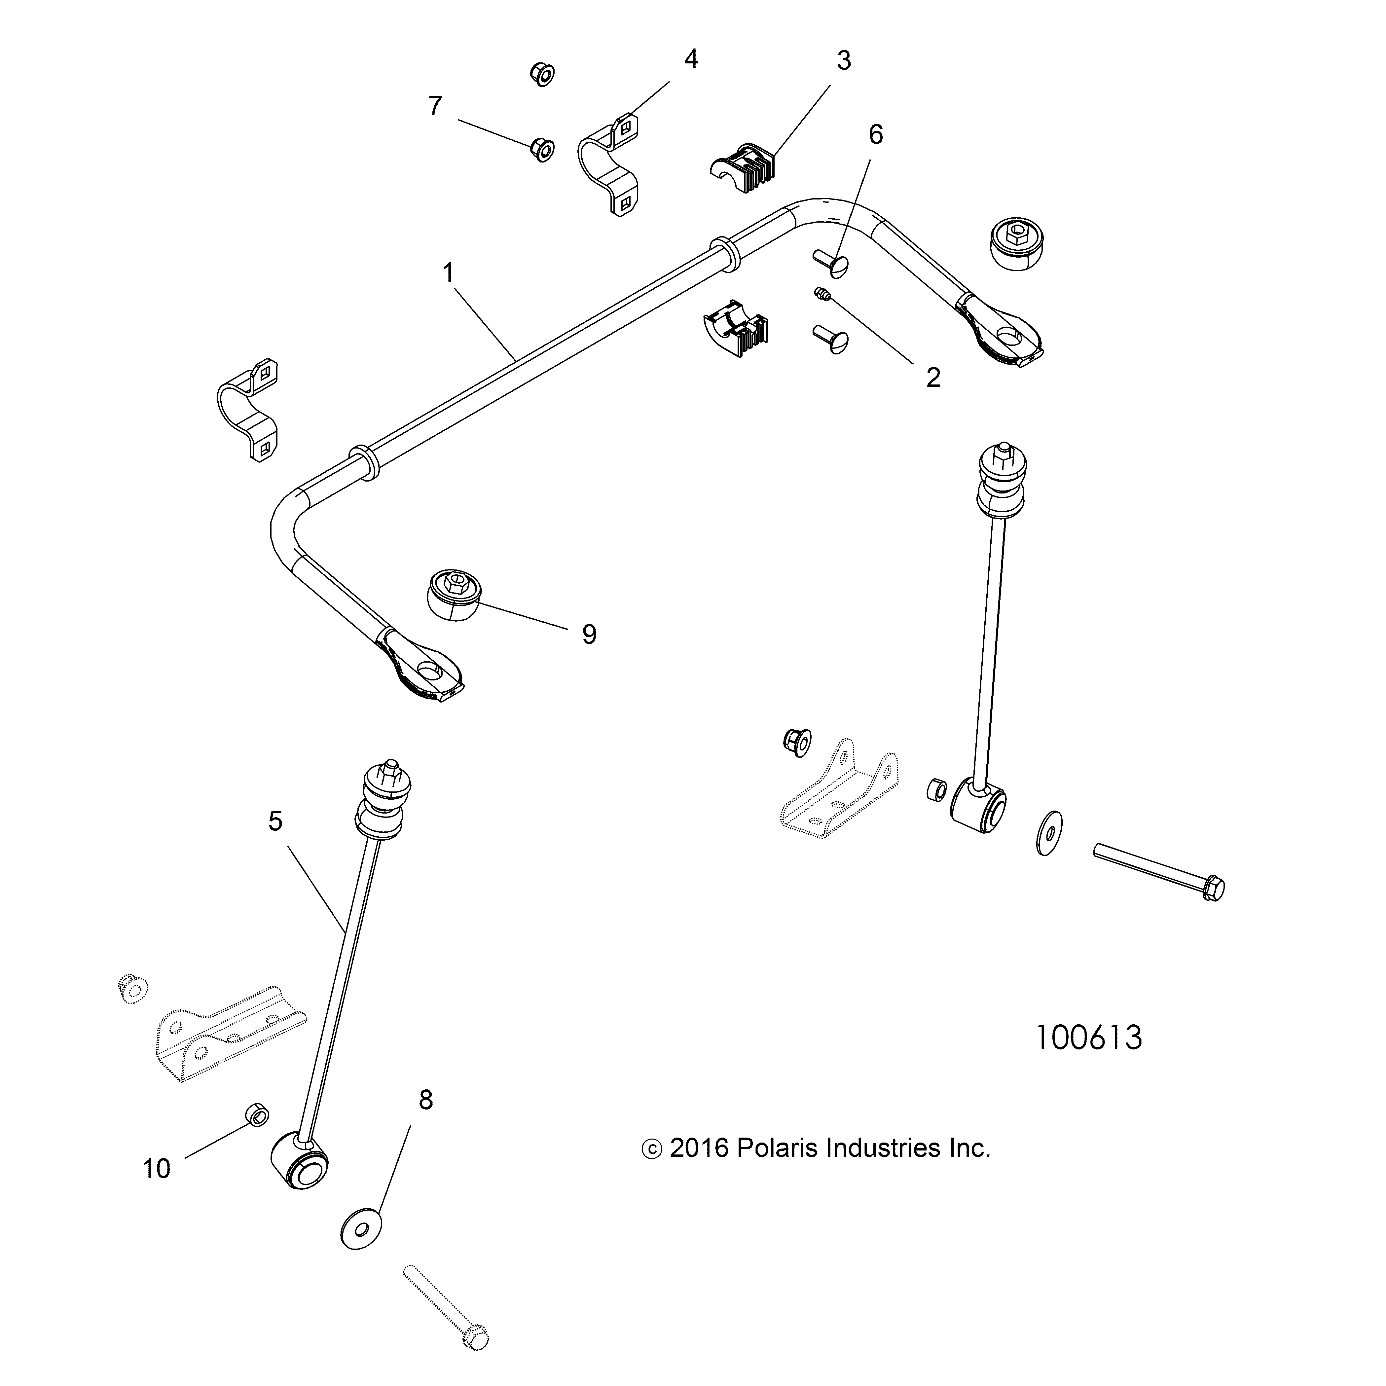 Foto diagrama Polaris que contem a peça 5416013